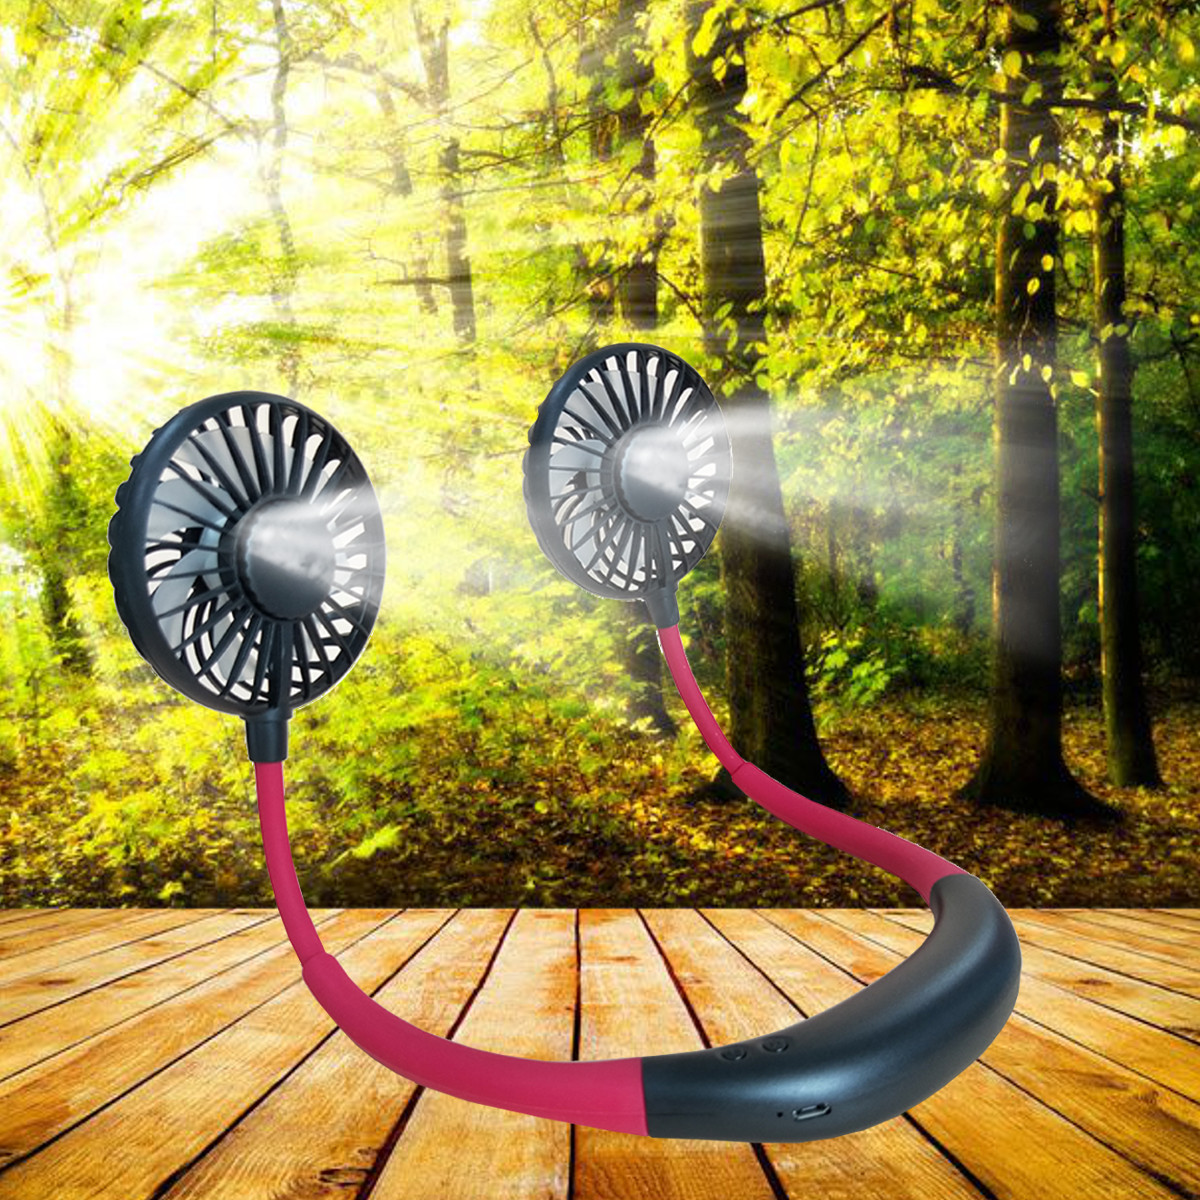 LED Personal Fan Hands-free Min Fan Aromatherapy Portable Li-ion Battery USB Rechargable Hanging Neck Sport Fan Mini Air Fan - Blue 15